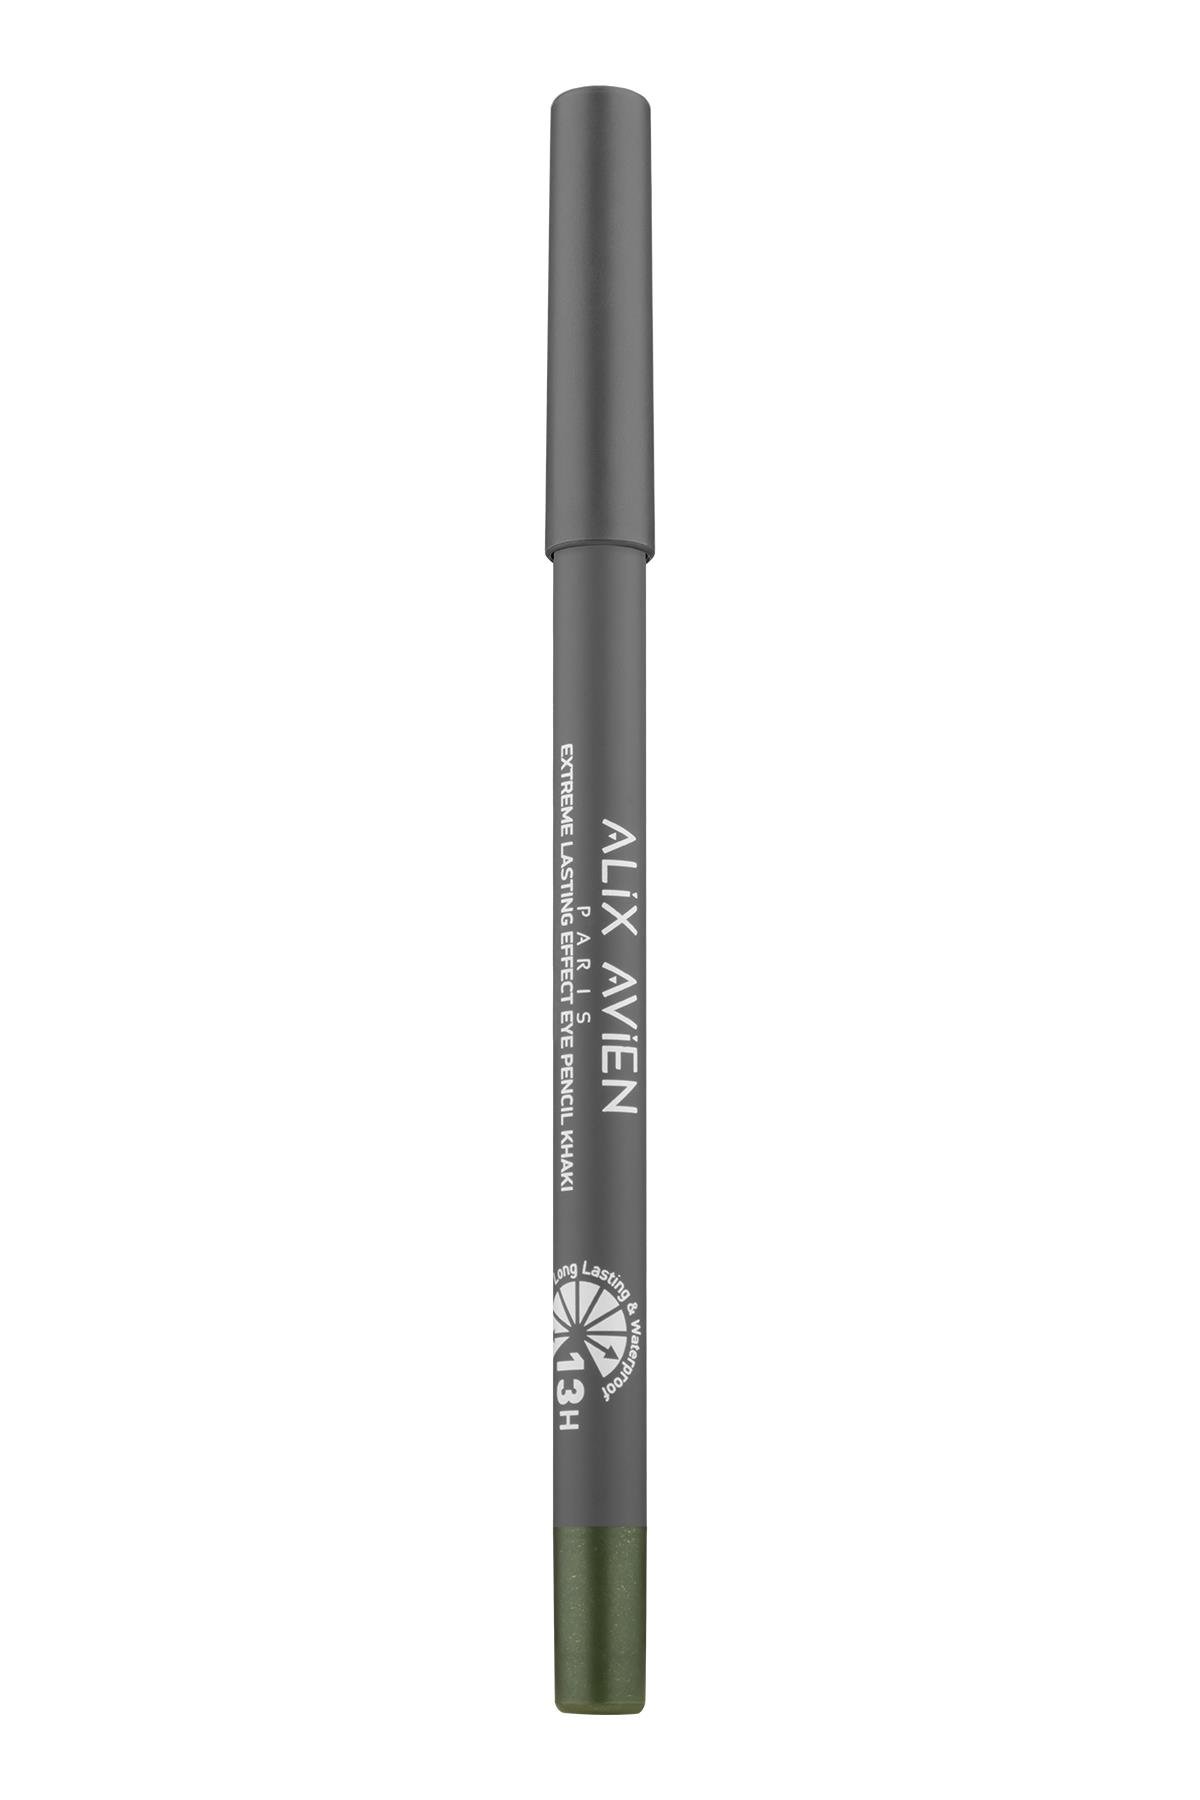 Suya Dayanıklı Haki Göz Kalemi - 13 Saat Kalıcı Etki - Extreme Lasting  Effect Eye Pencil Khaki